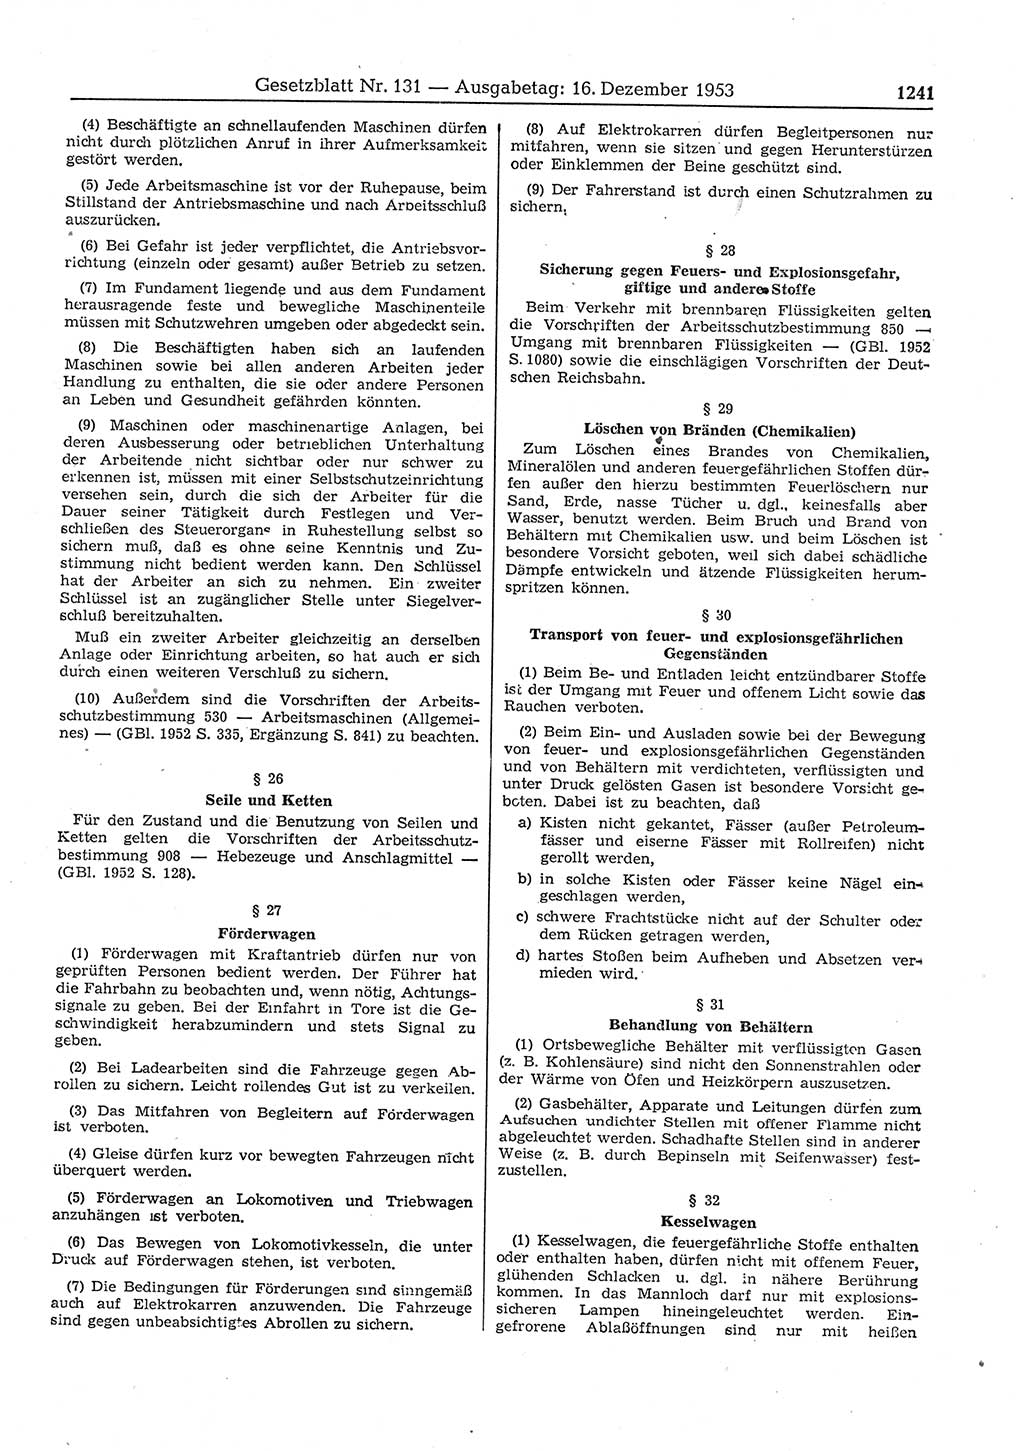 Gesetzblatt (GBl.) der Deutschen Demokratischen Republik (DDR) 1953, Seite 1241 (GBl. DDR 1953, S. 1241)